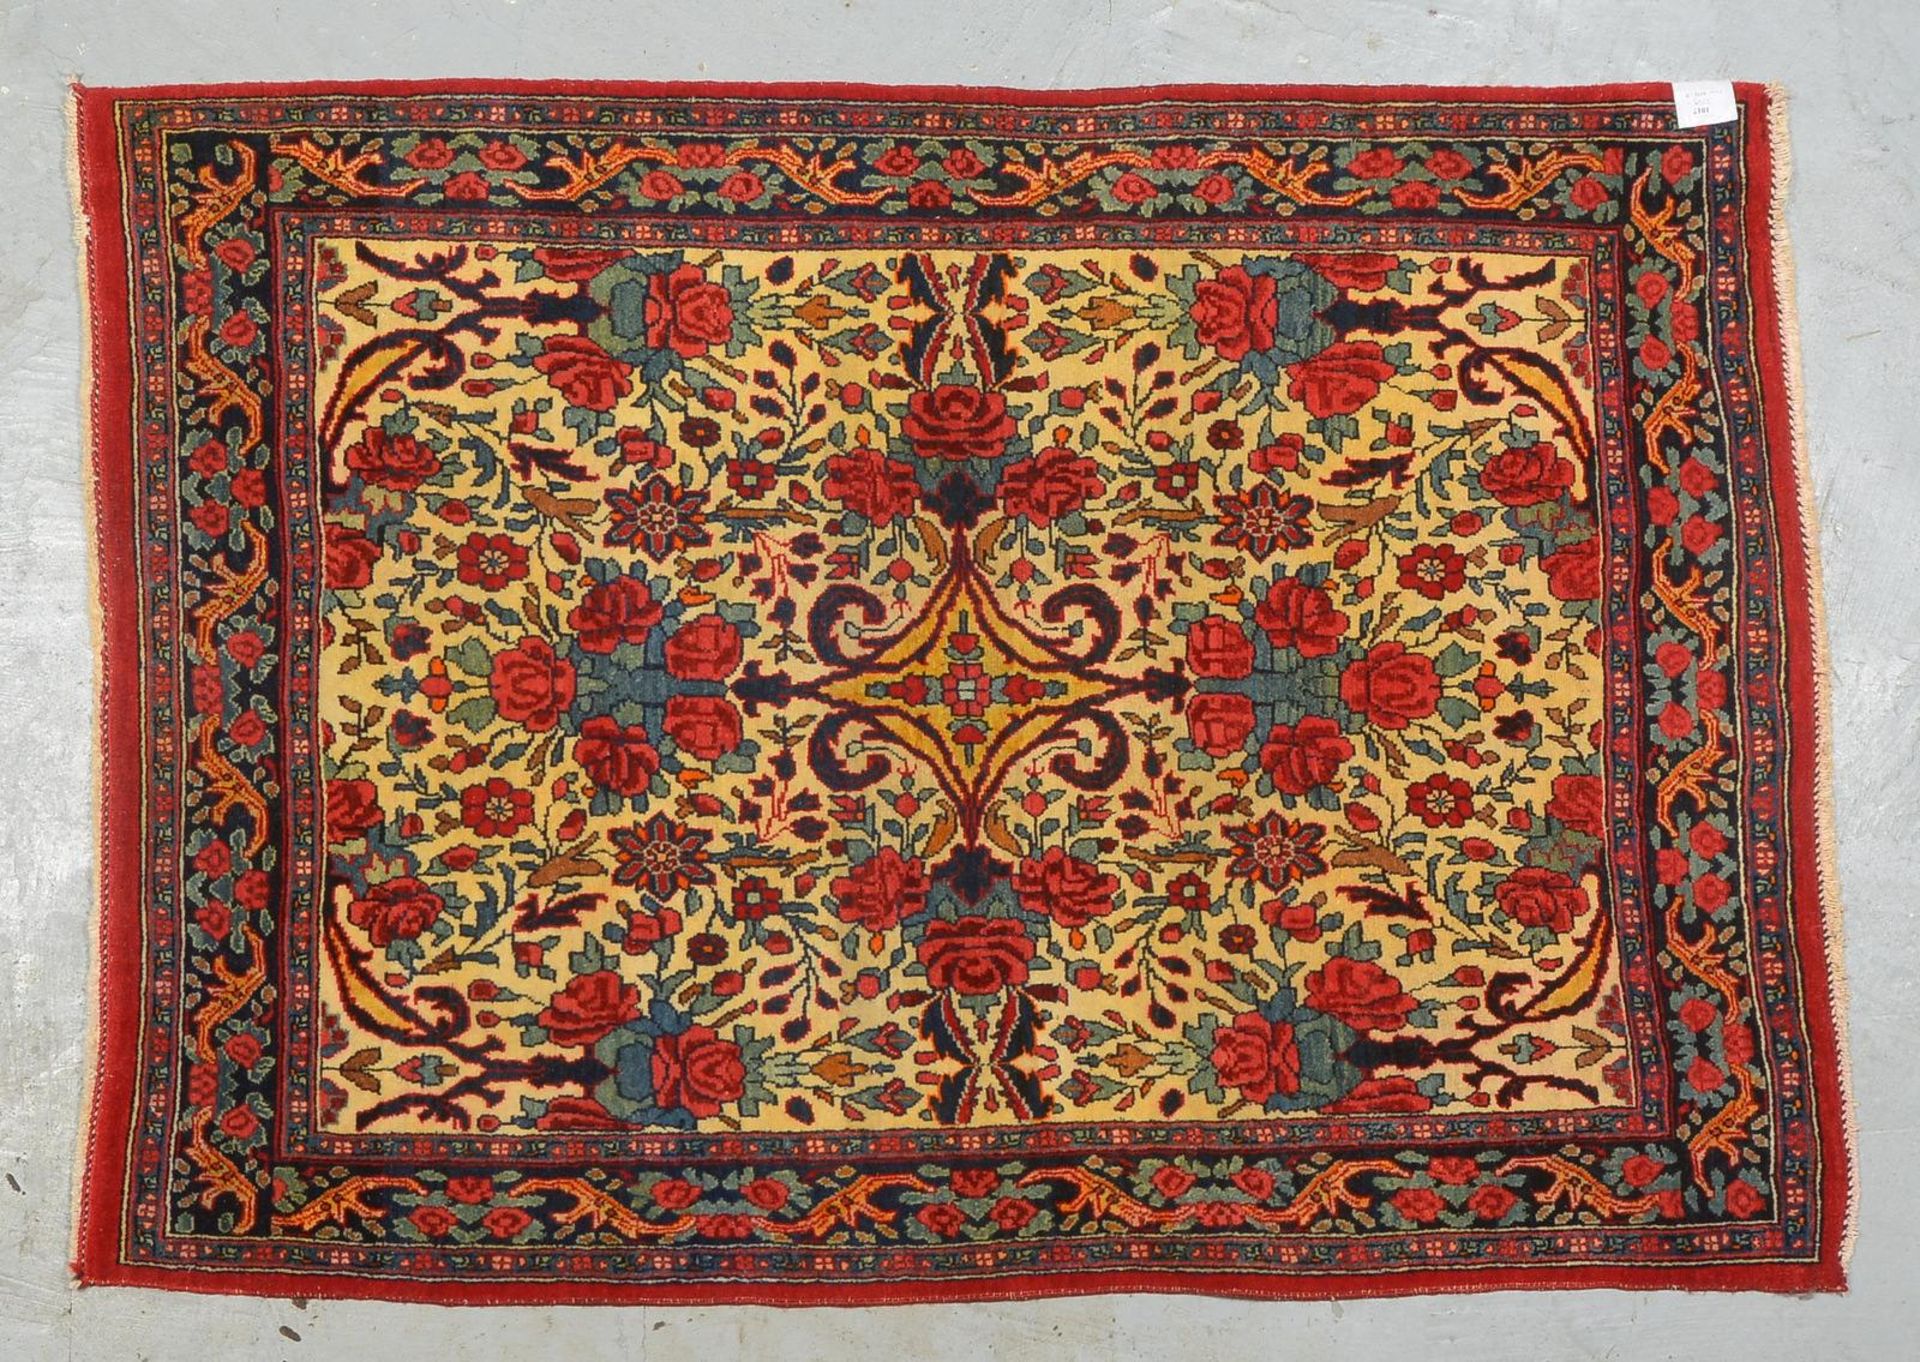 Rosen-Bidjar, antik, feste Kn., Pflanzenfarben, hellgrundig, dichter Flor, guter Zust.; 146 x 105 cm